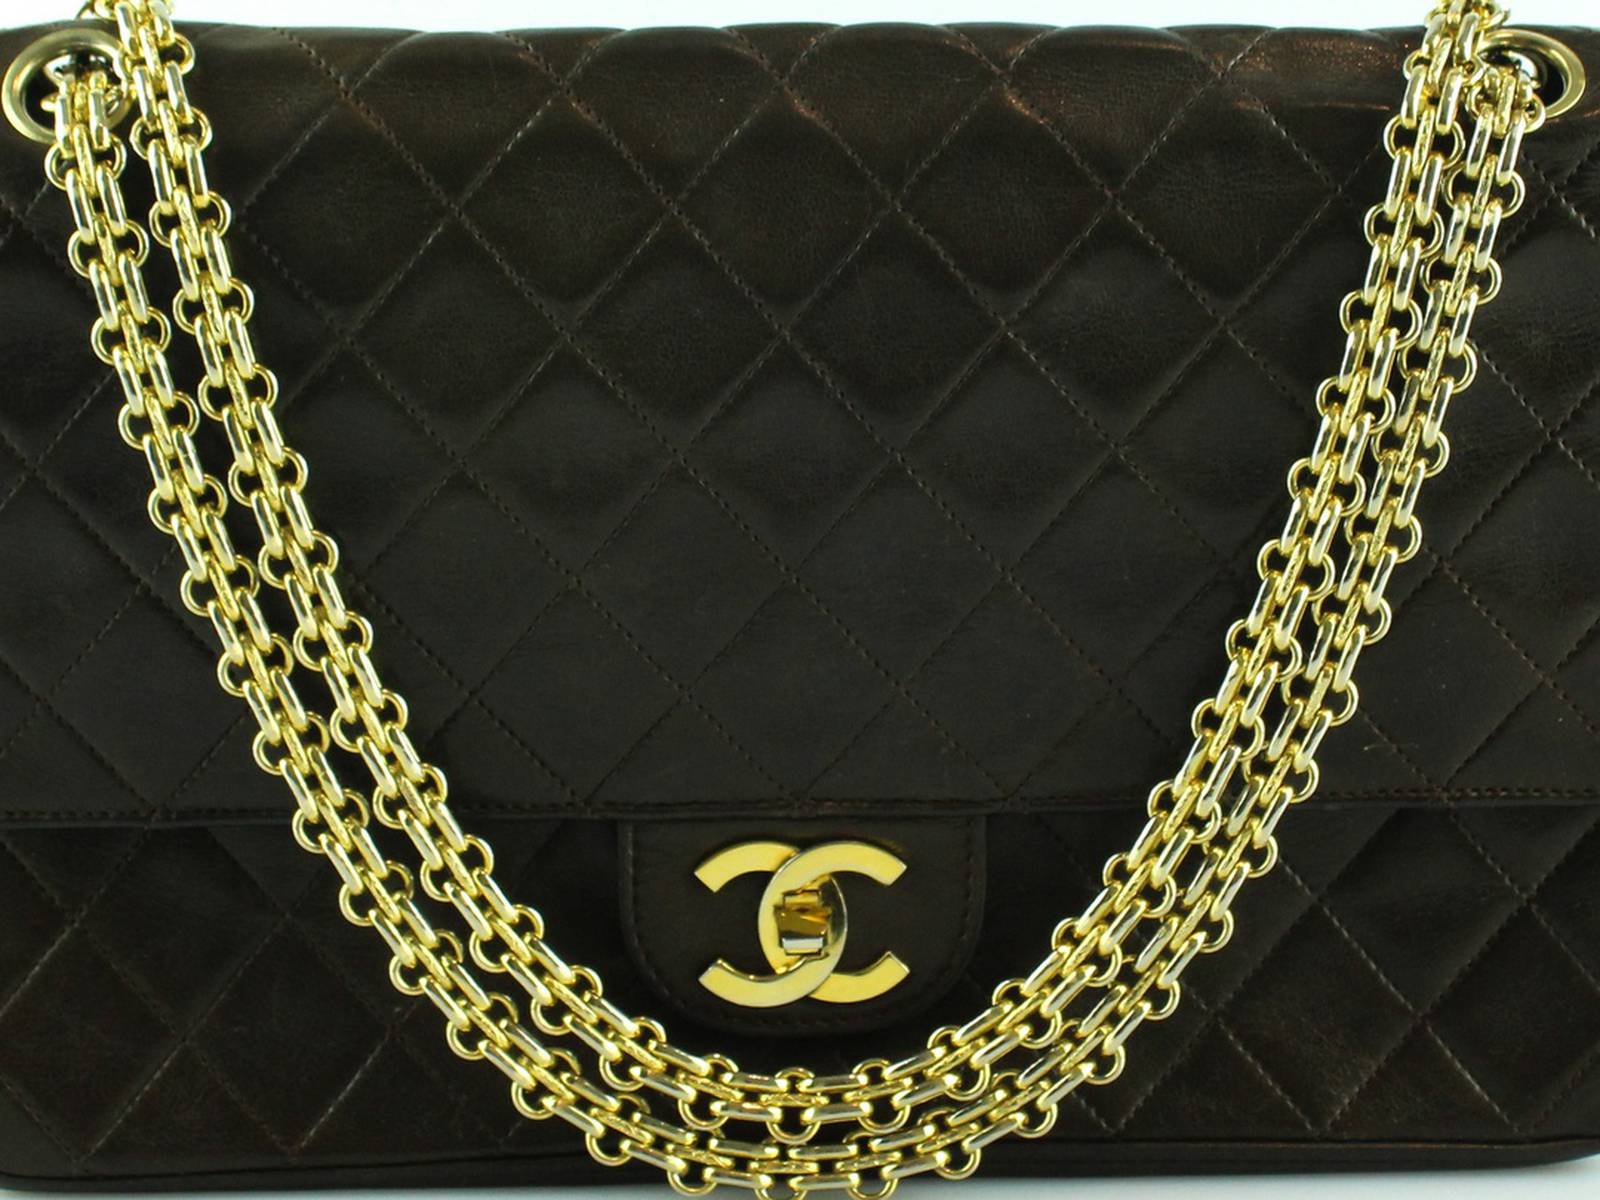 A Brief History of Chanel Handbags